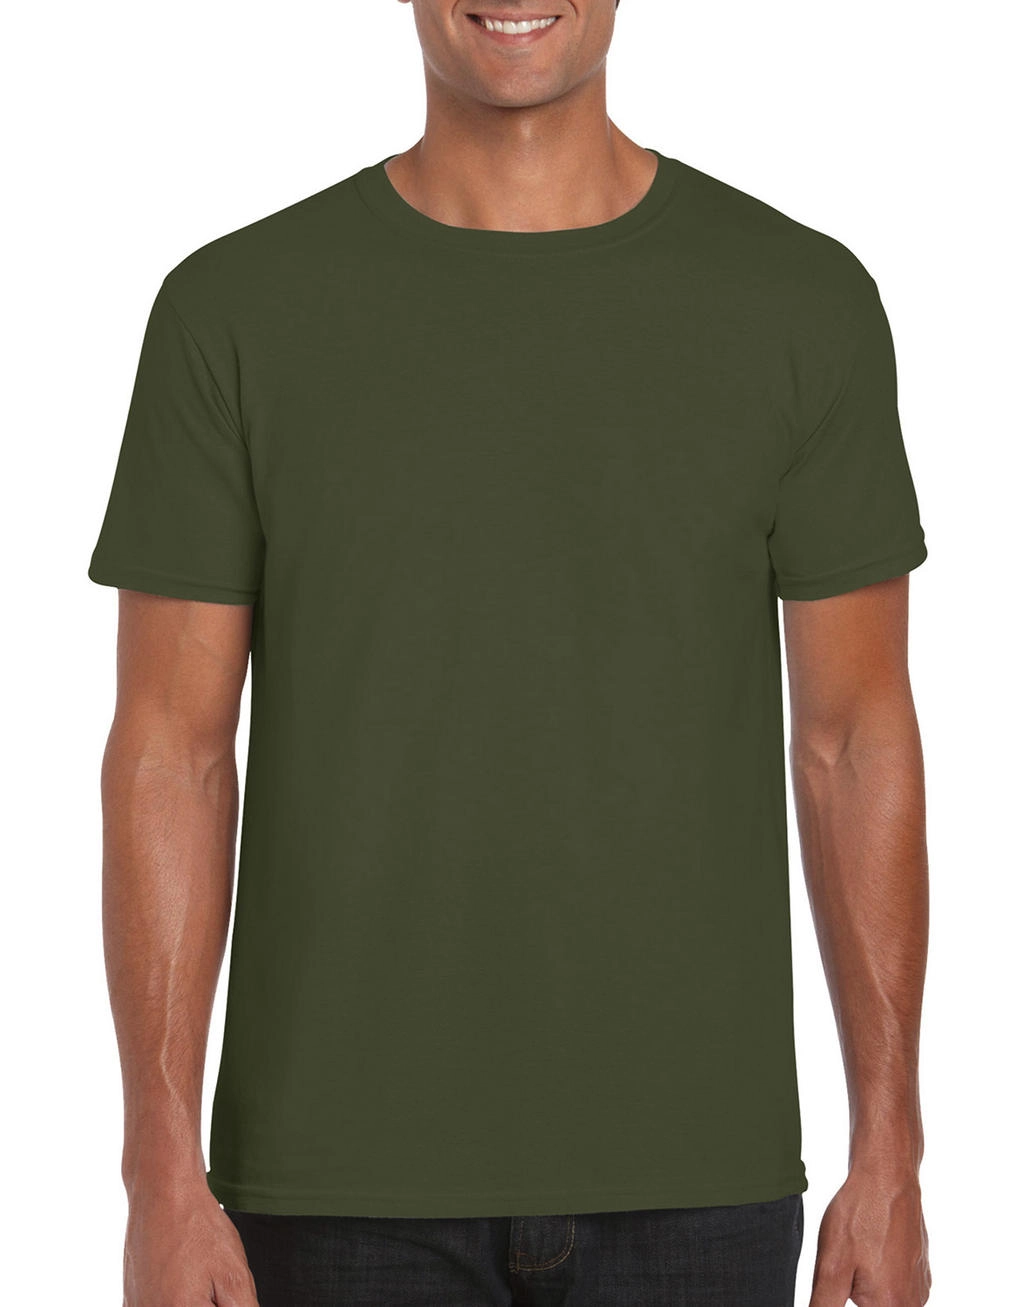 Softstyle® Ring Spun T-Shirt zum Besticken und Bedrucken in der Farbe Military Green mit Ihren Logo, Schriftzug oder Motiv.